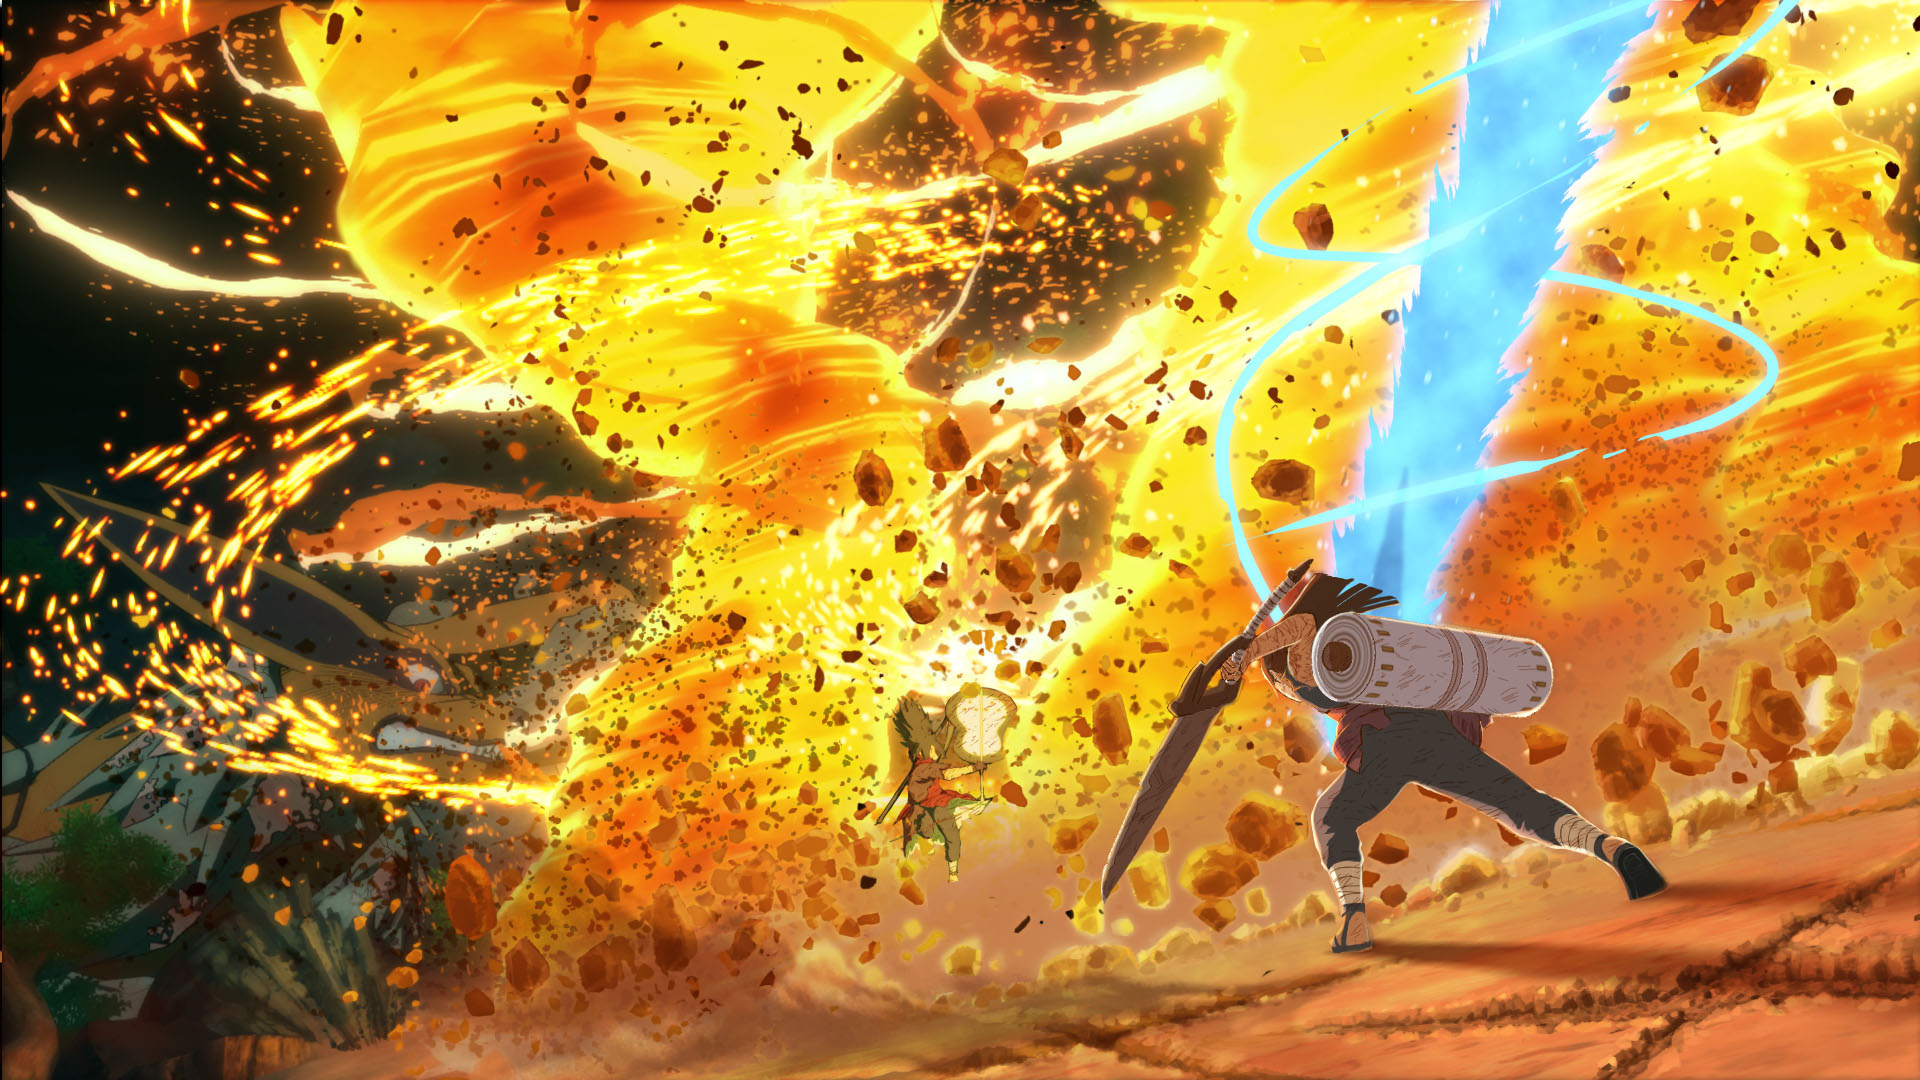 Naruto Shippuden: Đừng bỏ lỡ bất kì hình ảnh liên quan đến Naruto Shippuden nào để khám phá thế giới rộng lớn của truyện tranh này! Với những tình tiết hấp dẫn, những trận chiến mãn nhãn và những nhân vật ấn tượng, Naruto Shippuden sẽ chinh phục trái tim của bạn chỉ sau một lần xem.